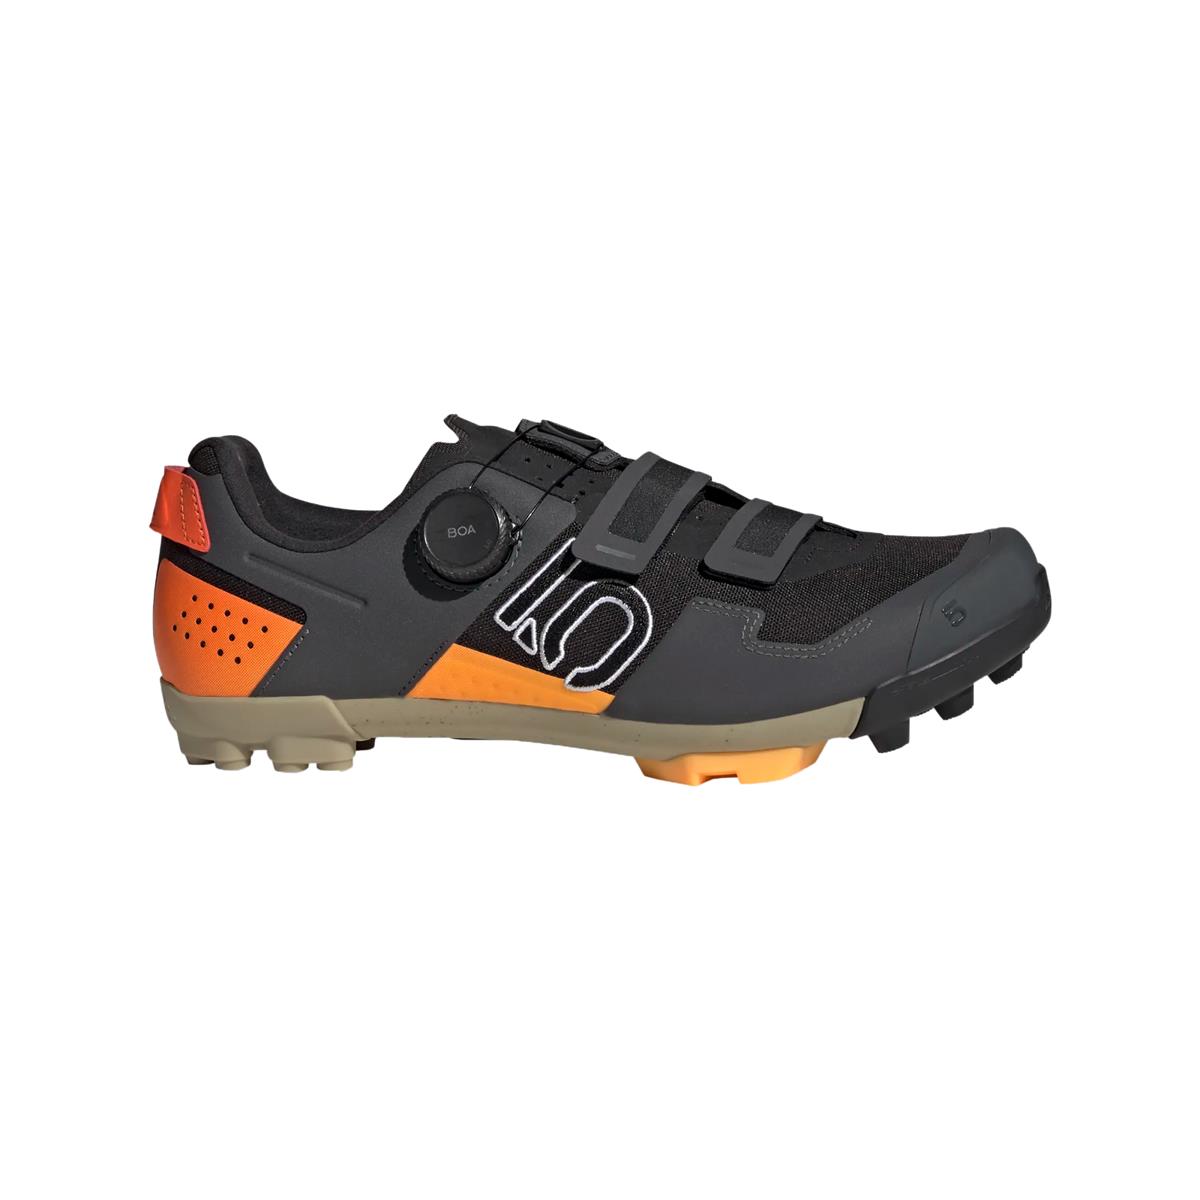 Clip 5.10 Kestrel Boa MTB Shoes Black/Orange Size 41.5